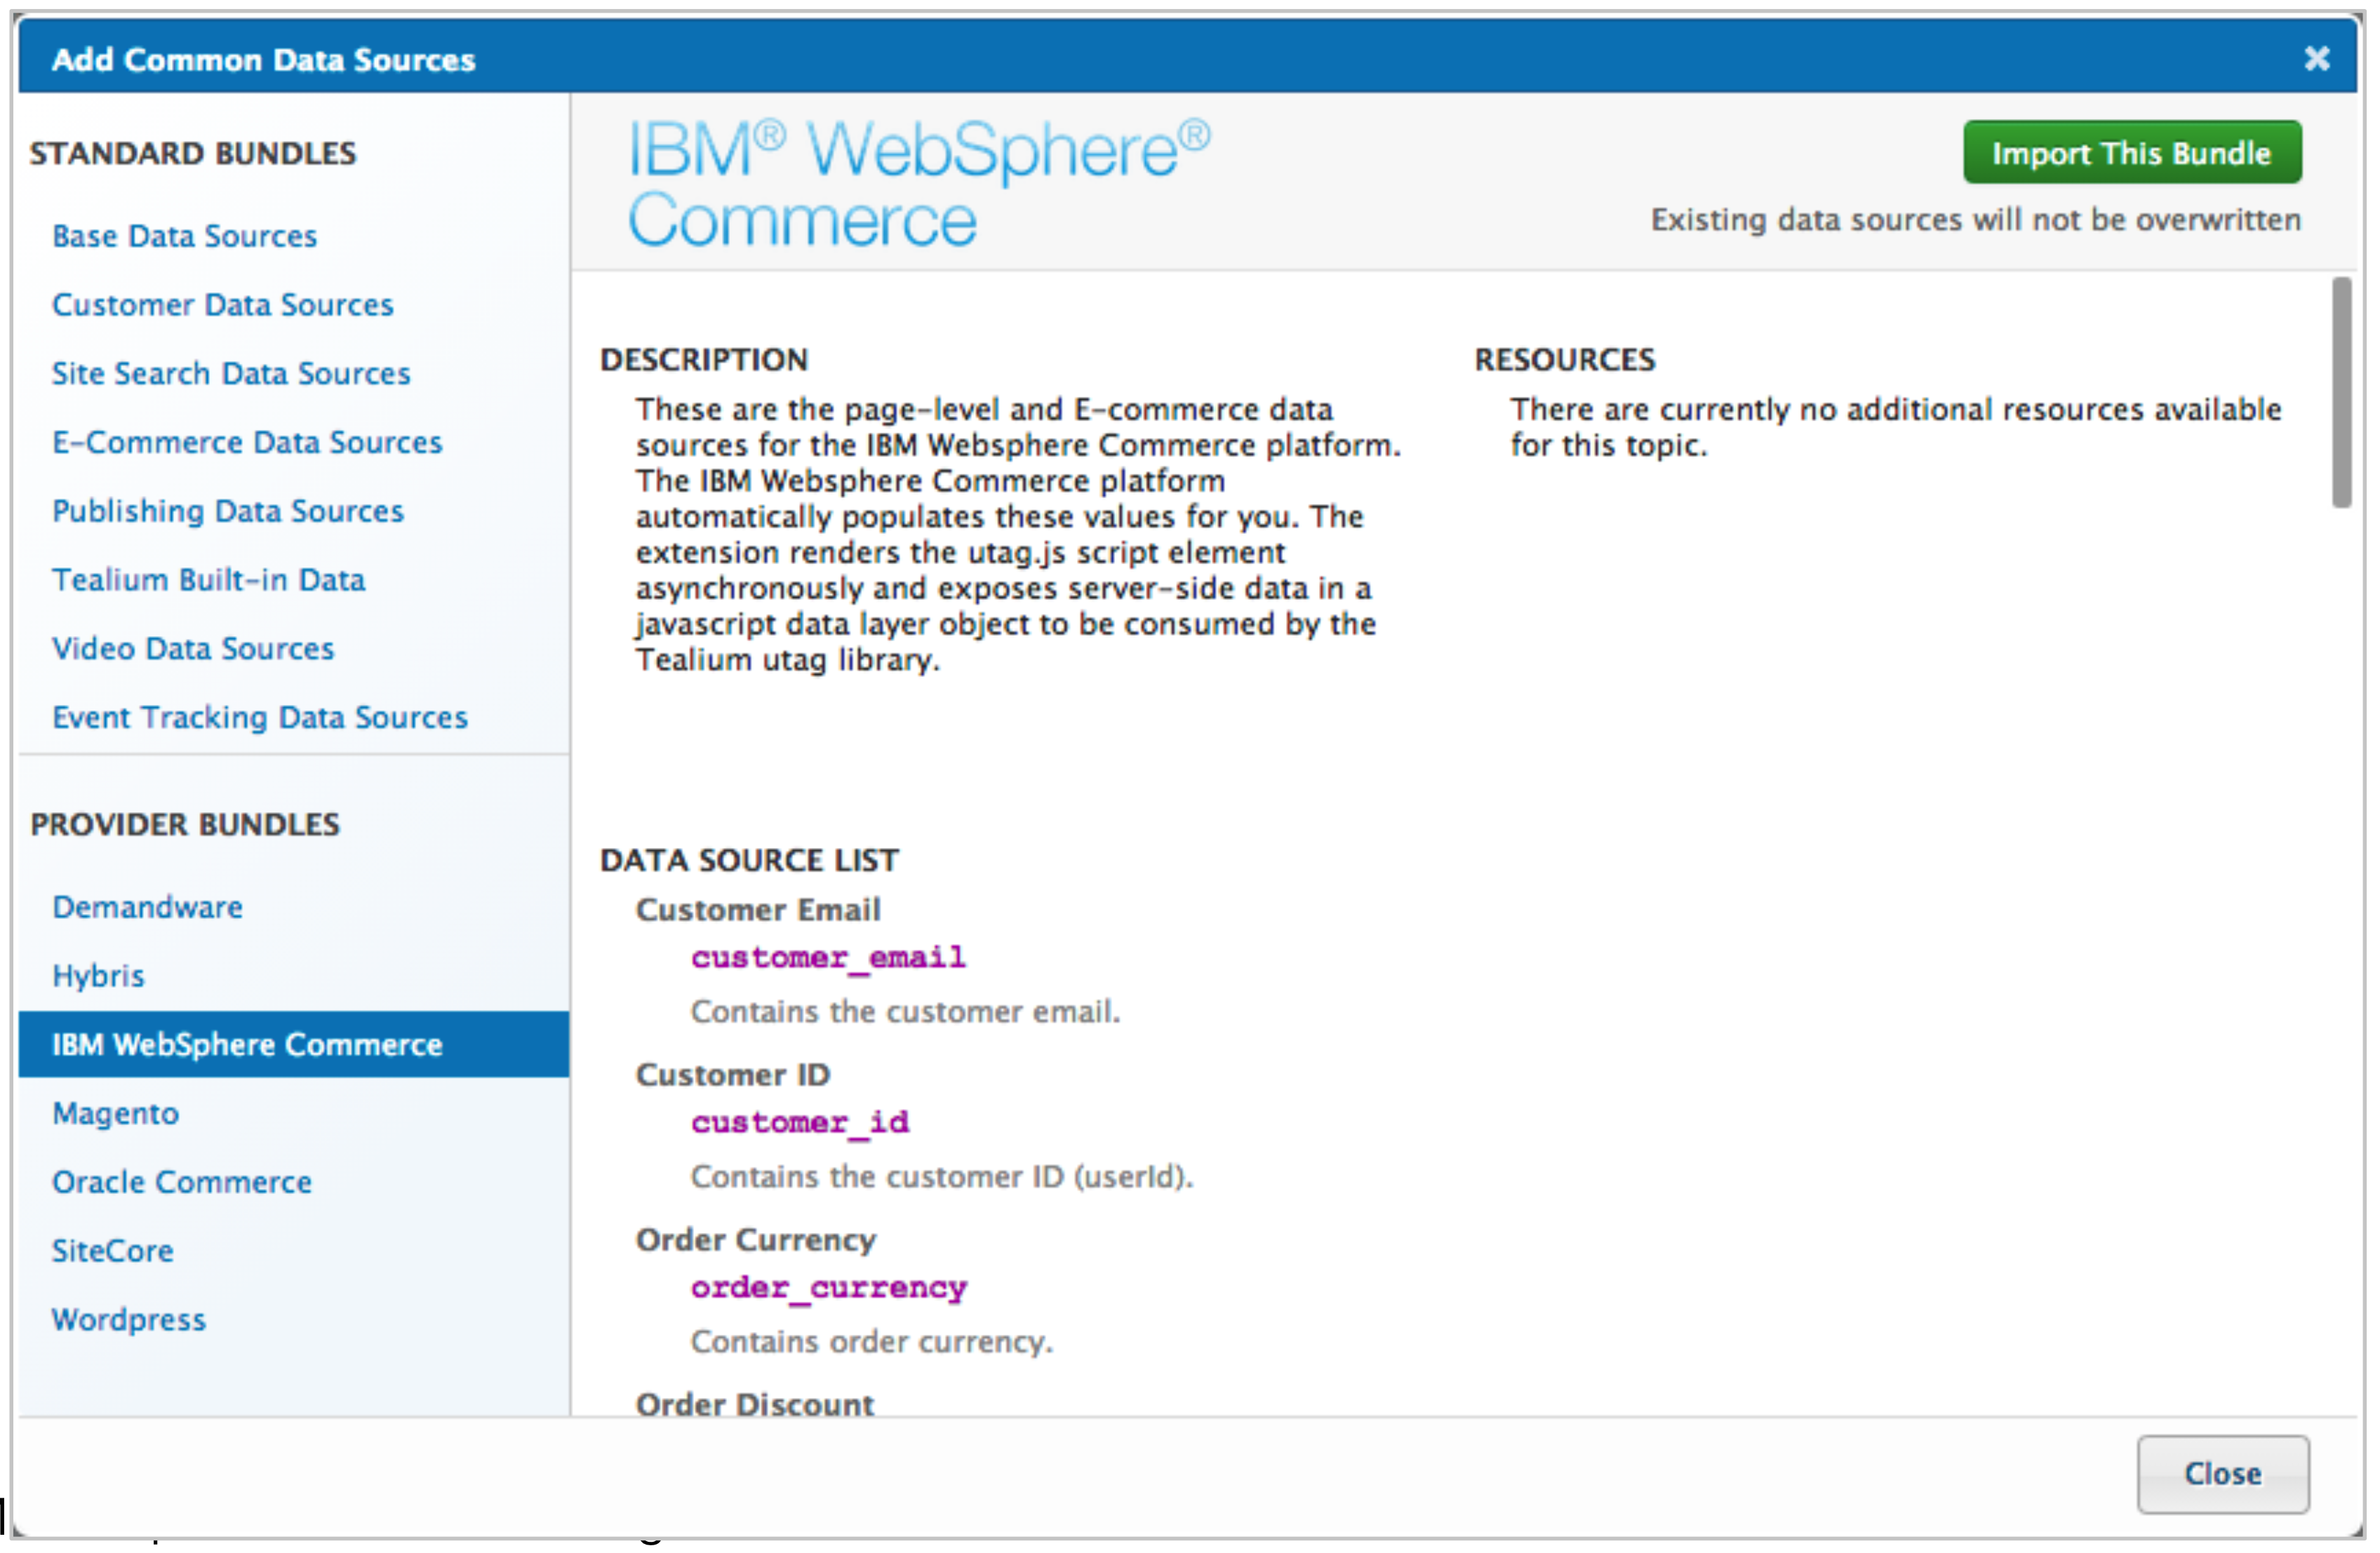 IBM WebSphere Data Source